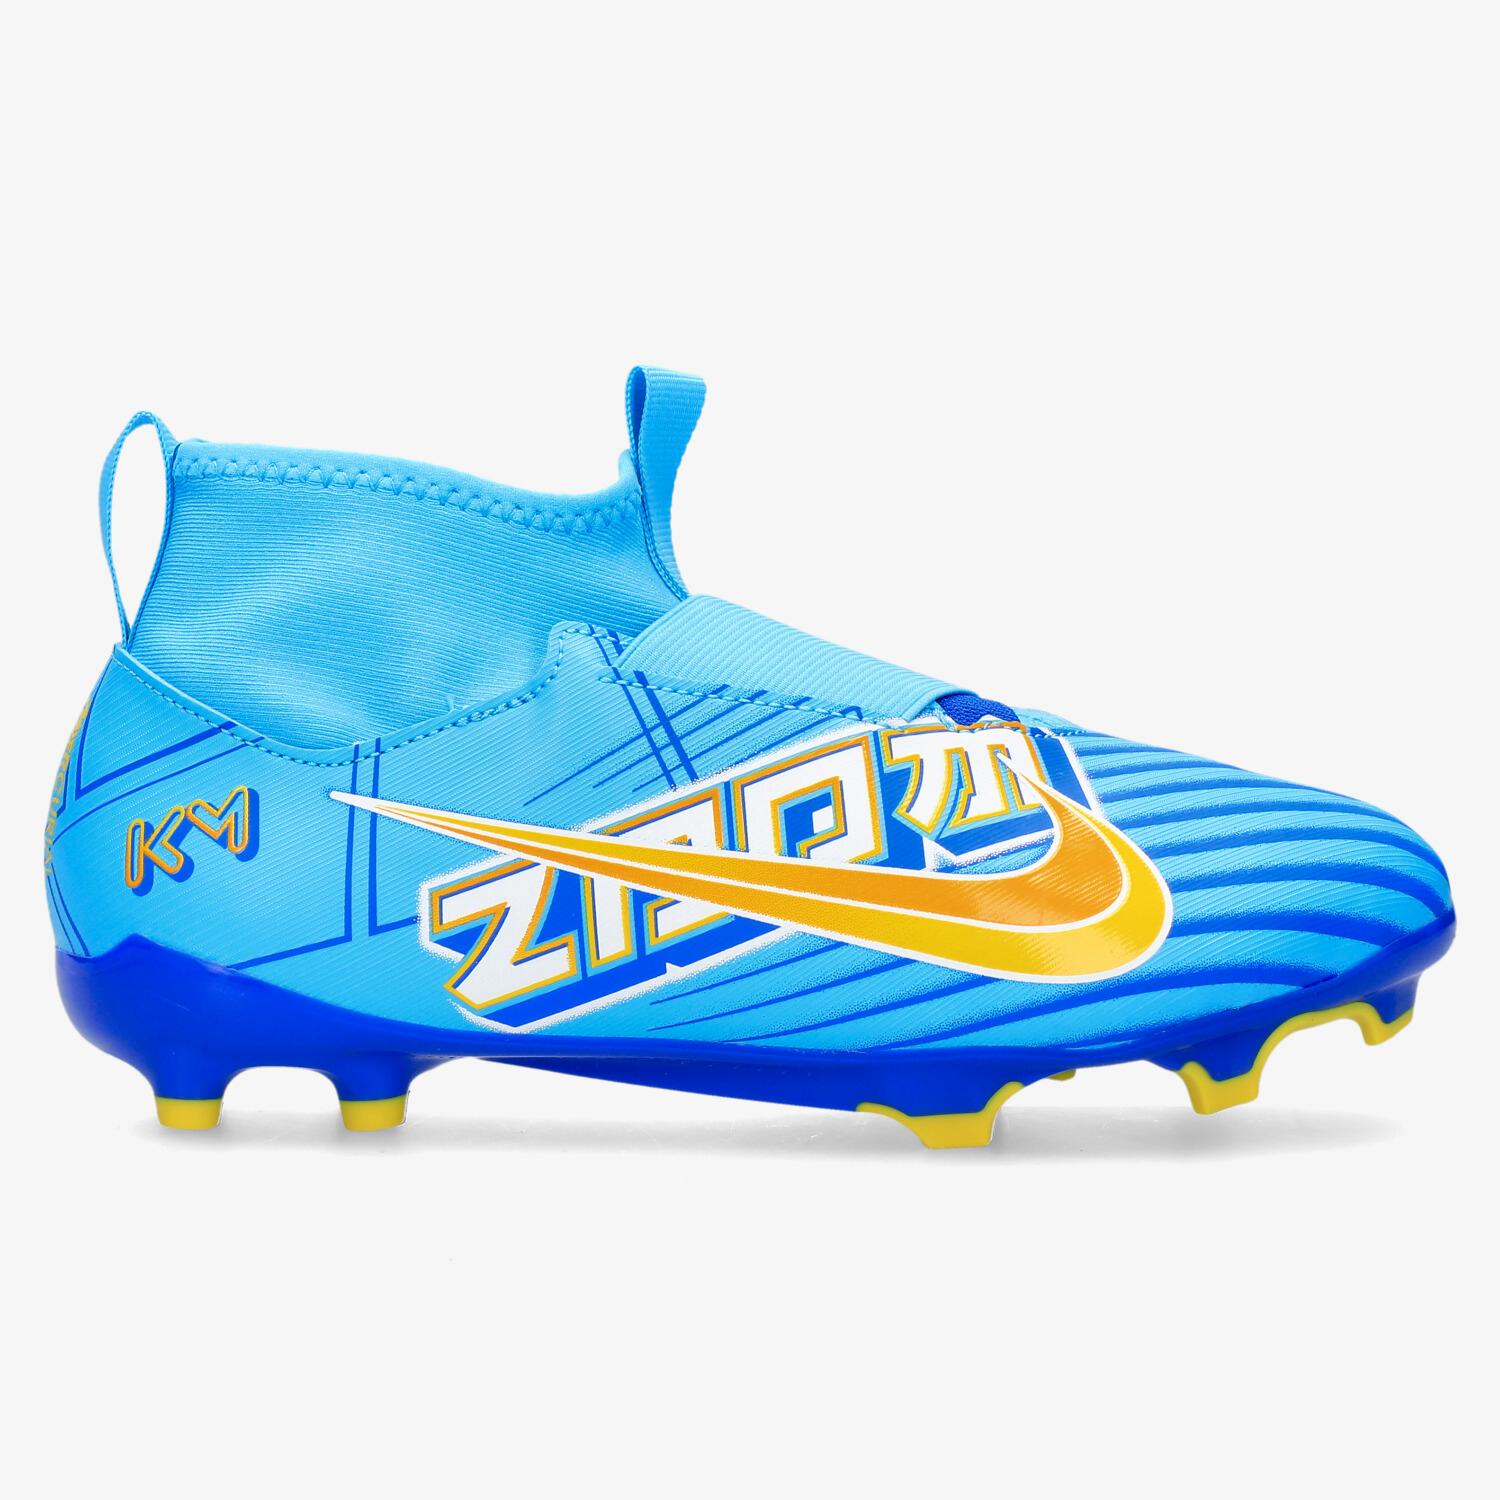 Las botas de fútbol chinas copia de las Nike Mercurial Superfly - SPORTYOU